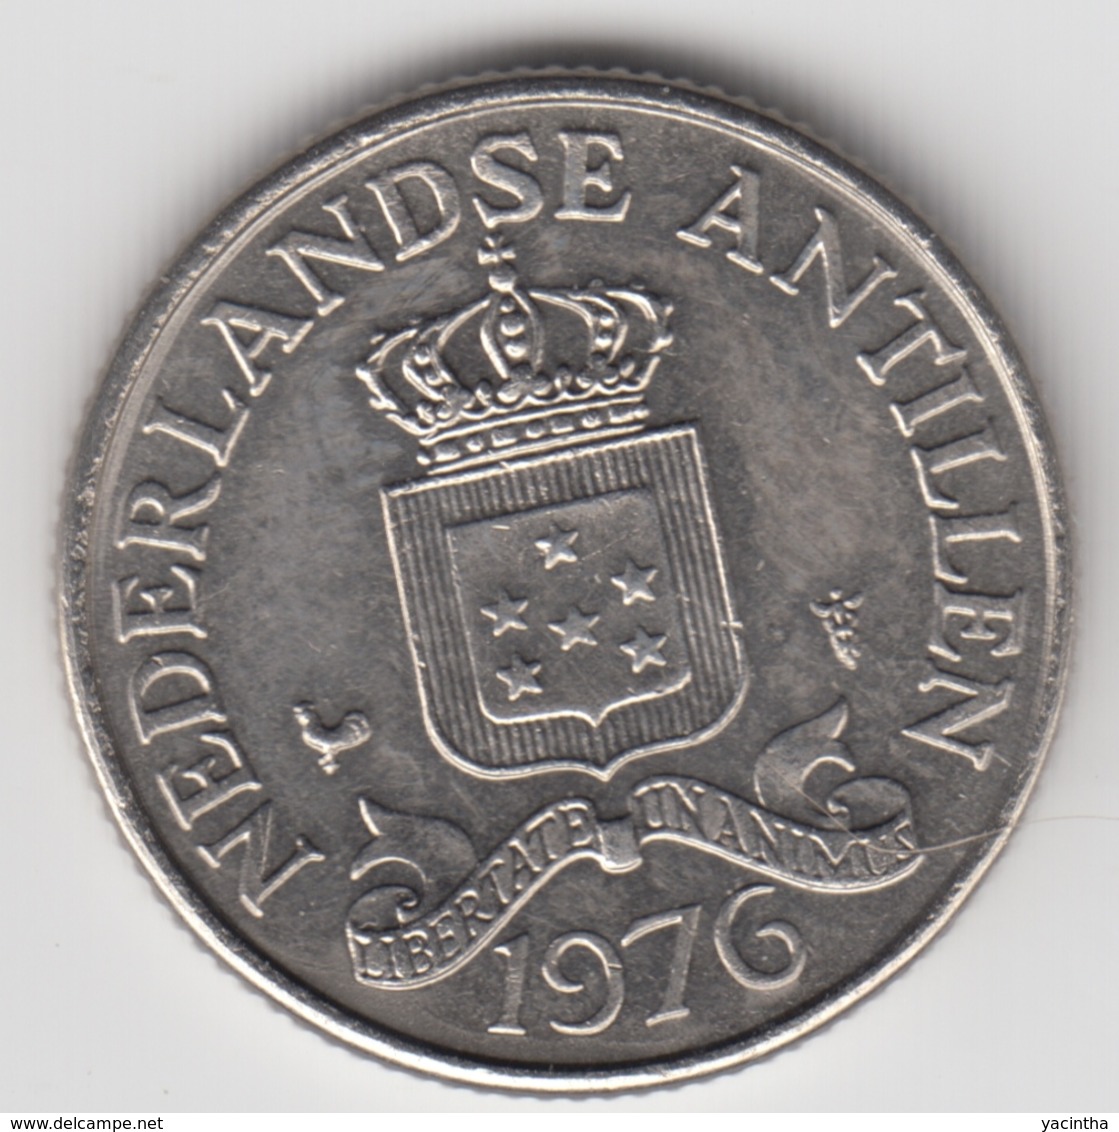 @Y@    Nederlandse Antillen   25  Cent  1976 ( 4688 ) - Antille Olandesi